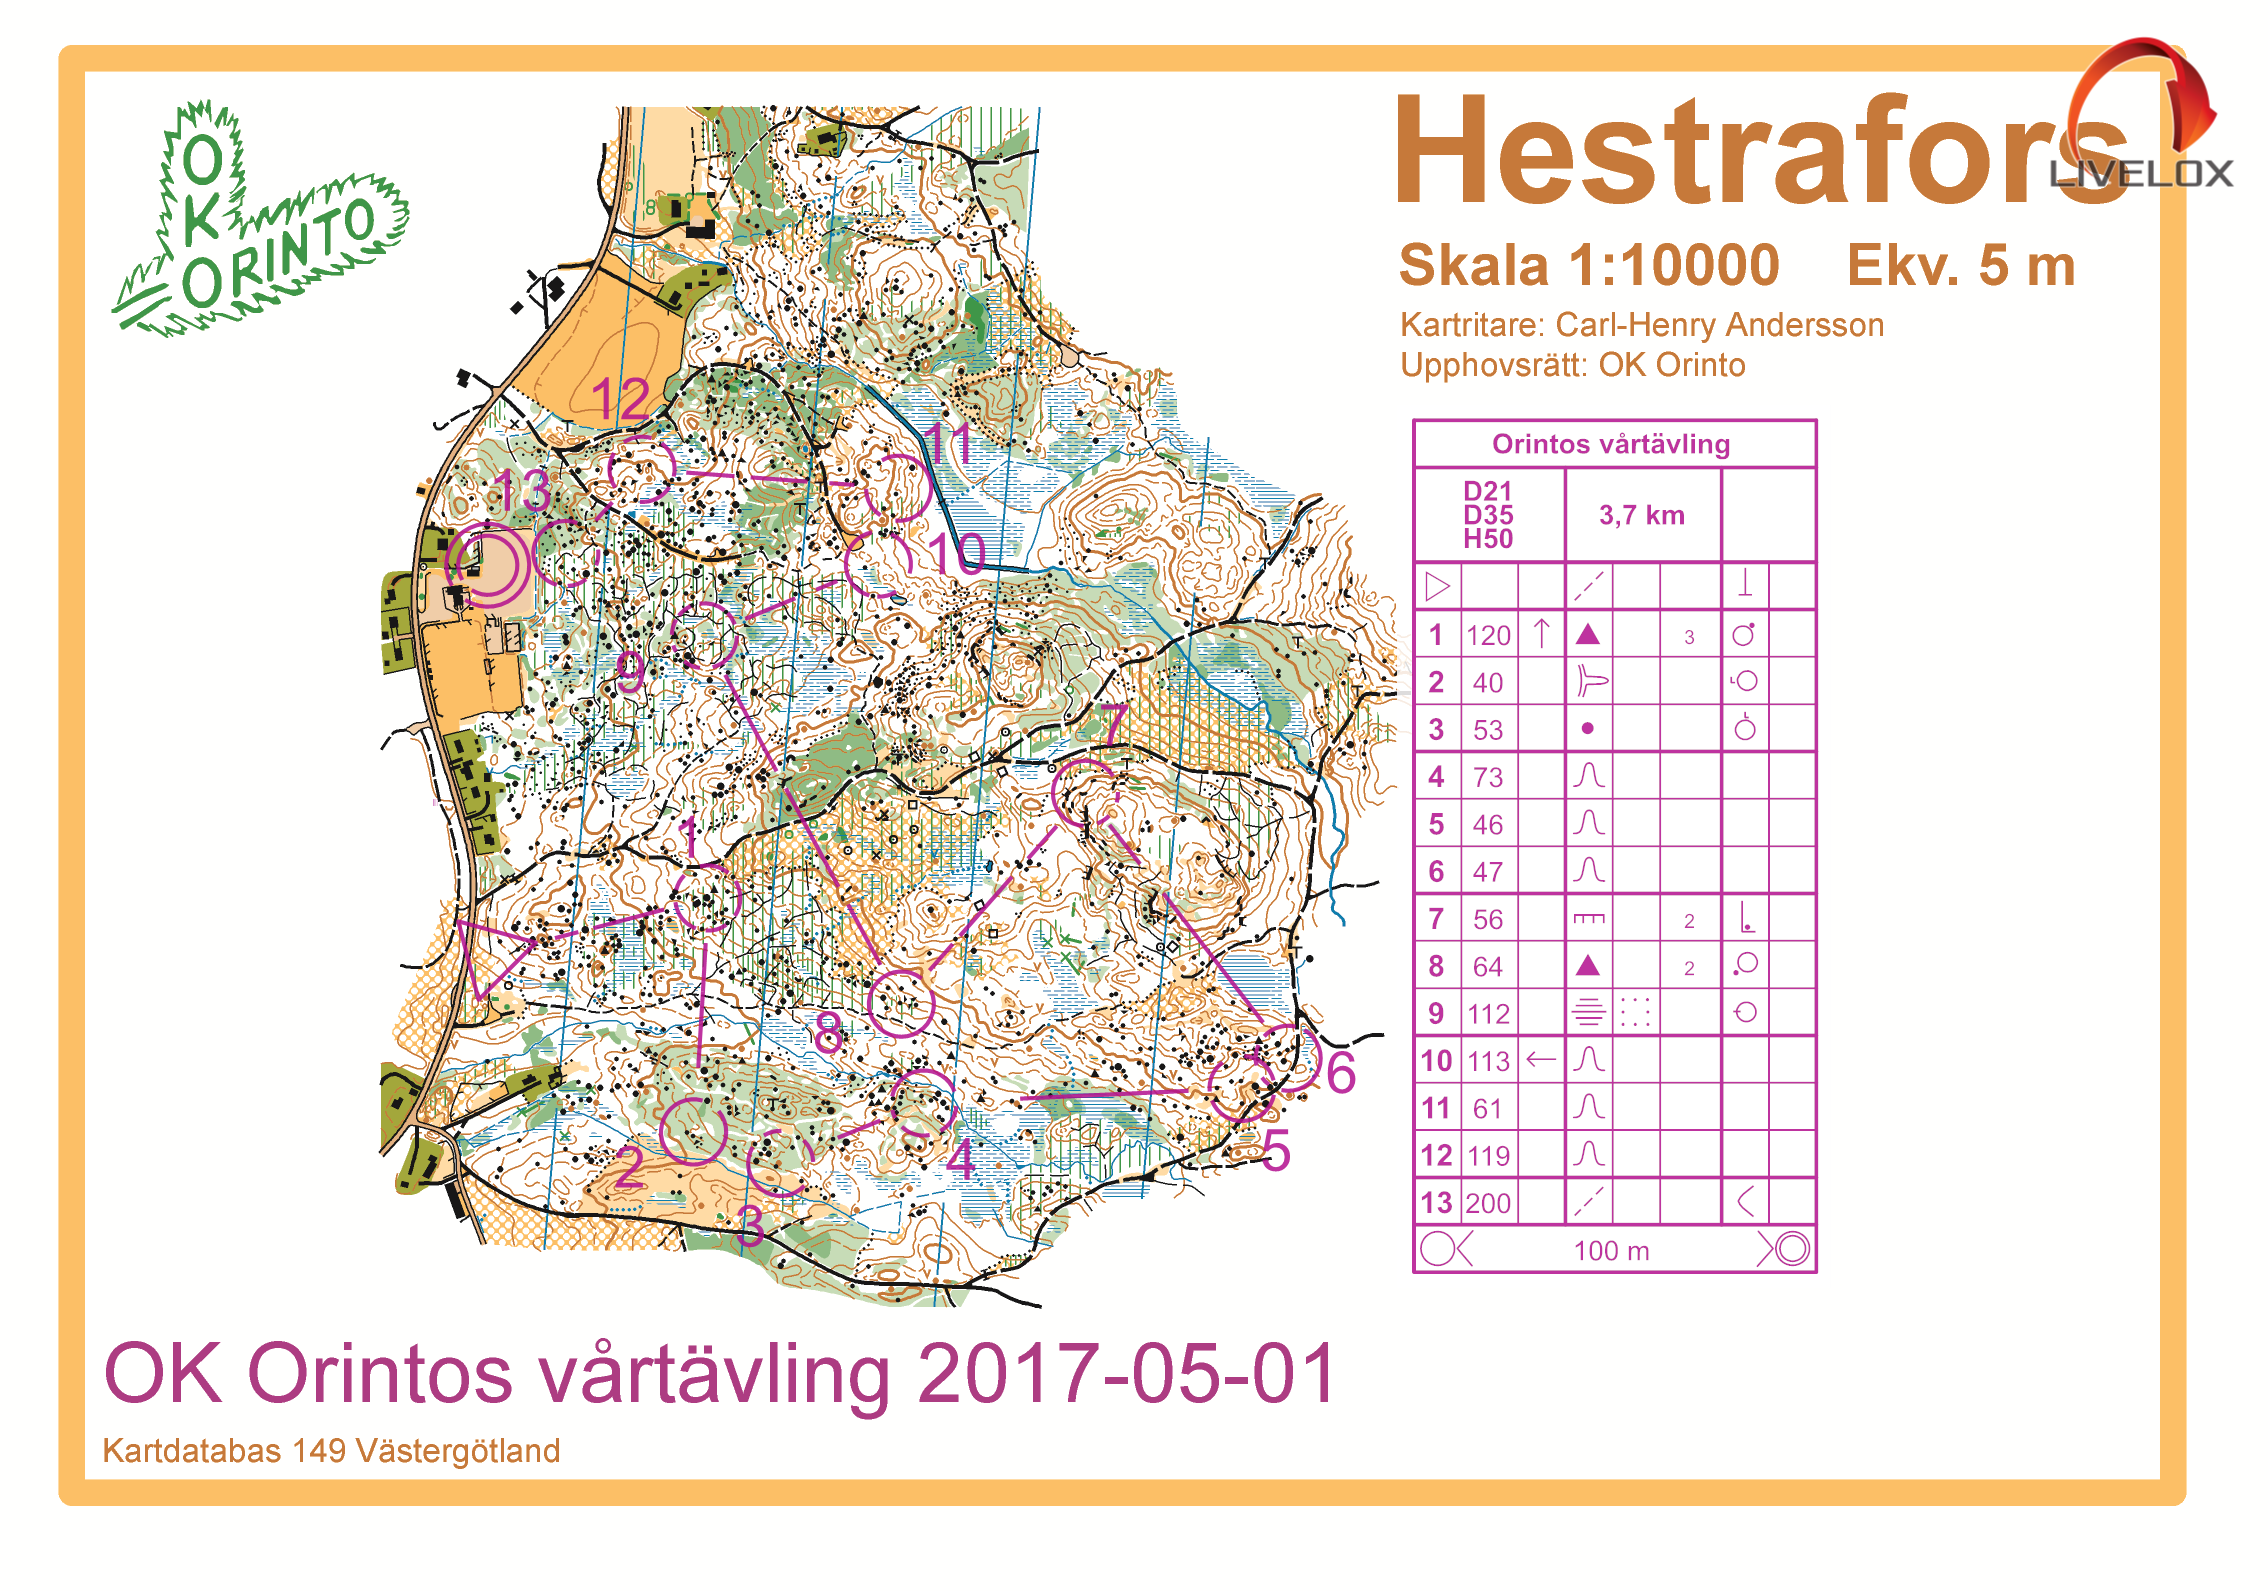 Orintos vårtävling (2017-05-01)